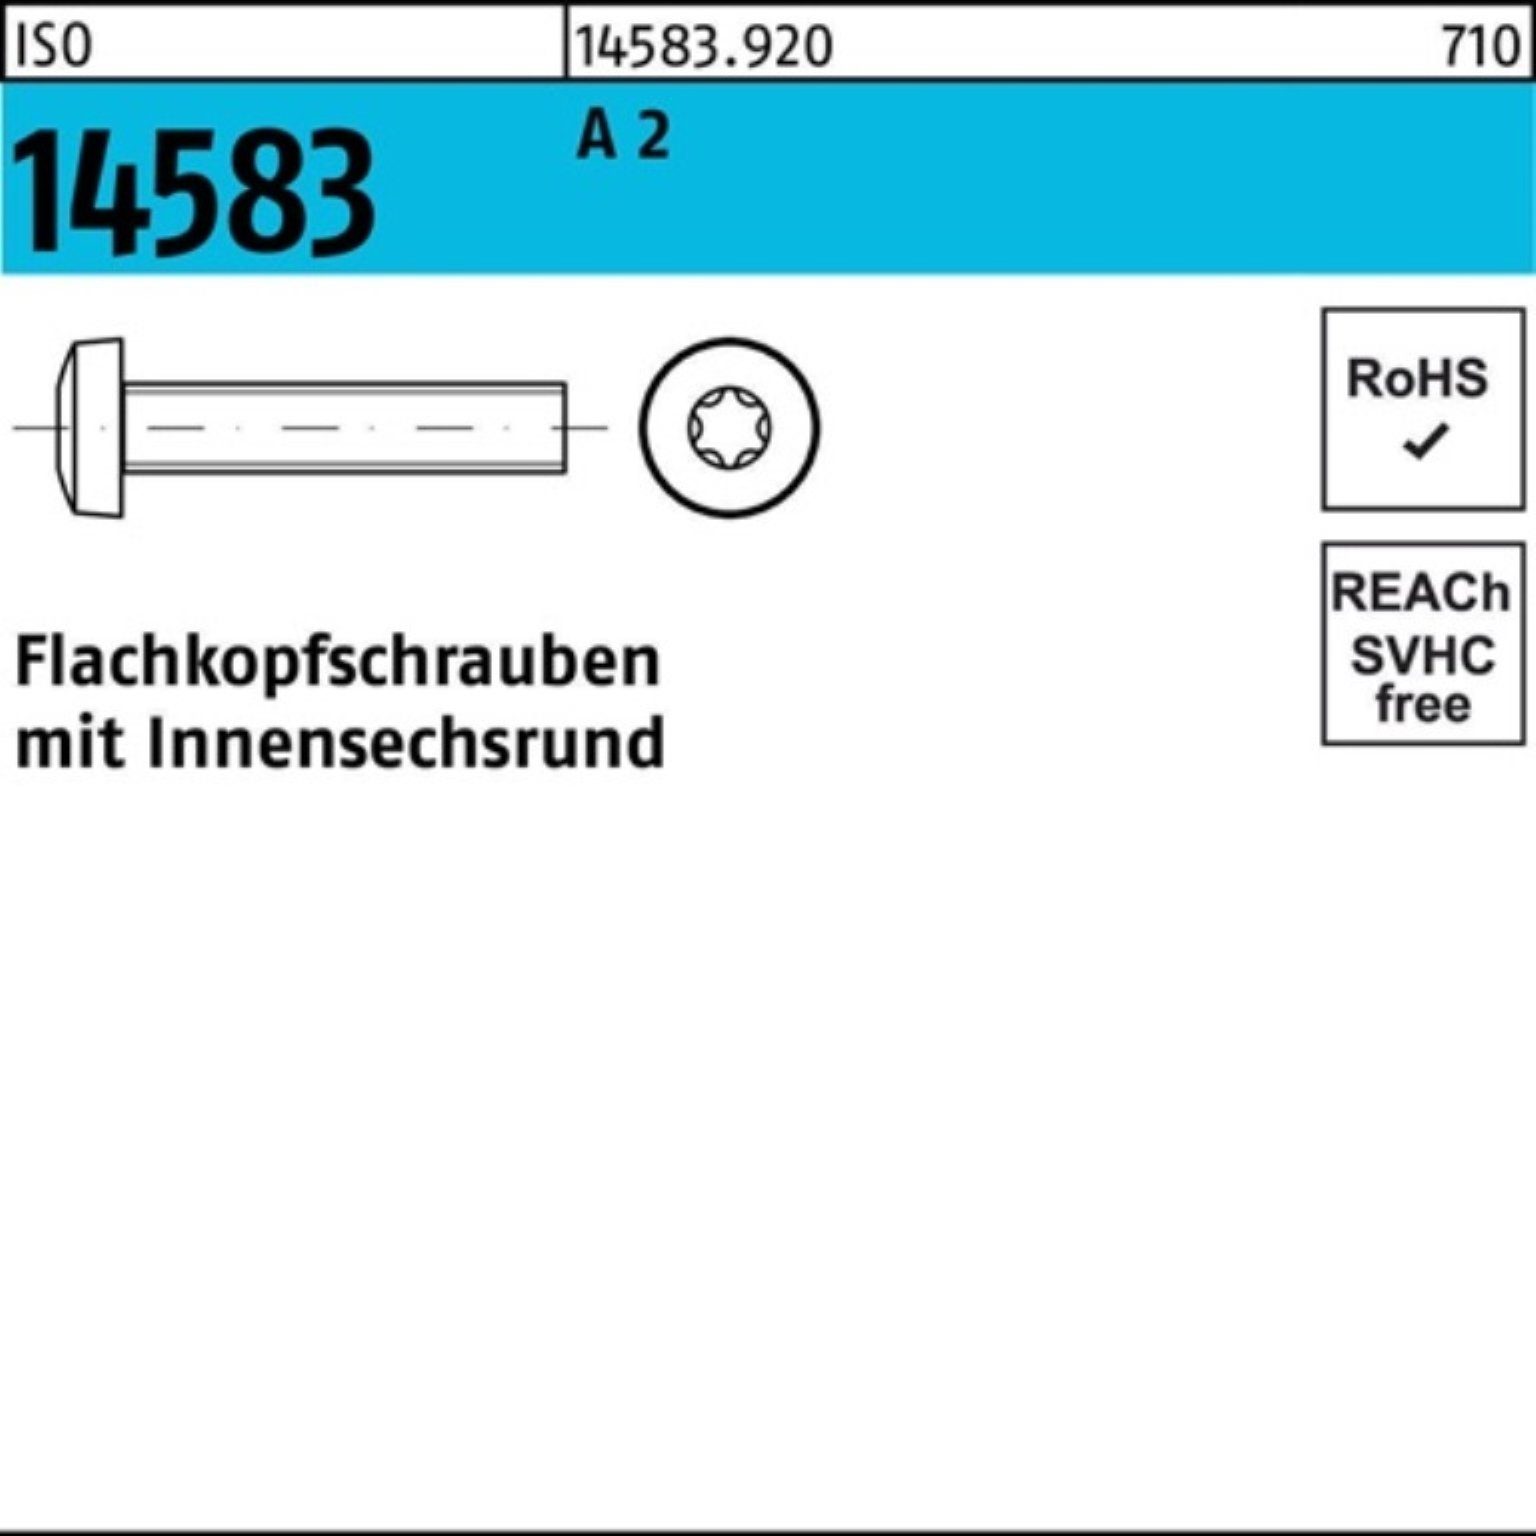 Reyher Schraube 200er 200 ISO A Stück ISR Flachkopfschraube M10x 12 14583 Pack ISO 2